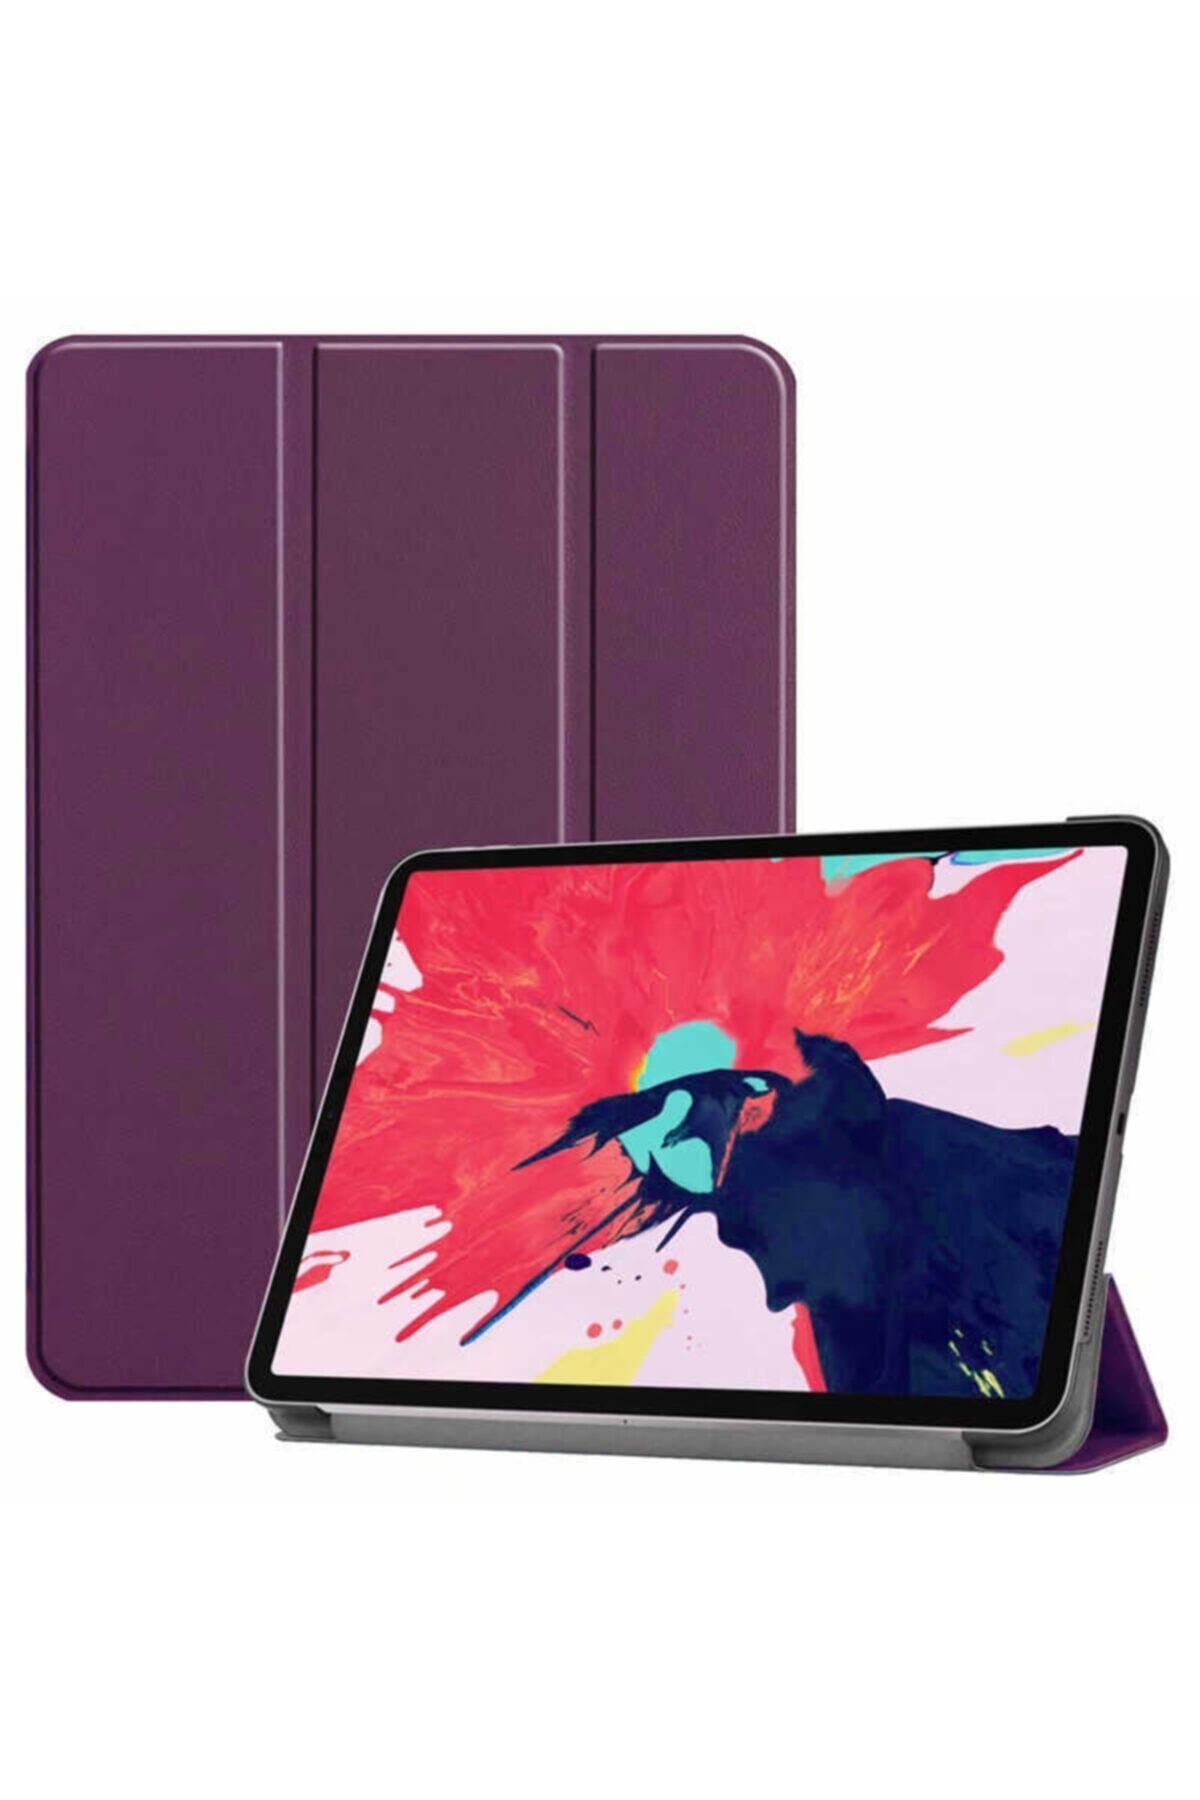 Teknoloji Gelsin Apple Ipad Pro 11 2020 2. Nesil Stand Kılıf Premium Flip Standlı Katlanabilir Smart Cover - Mürdüm -